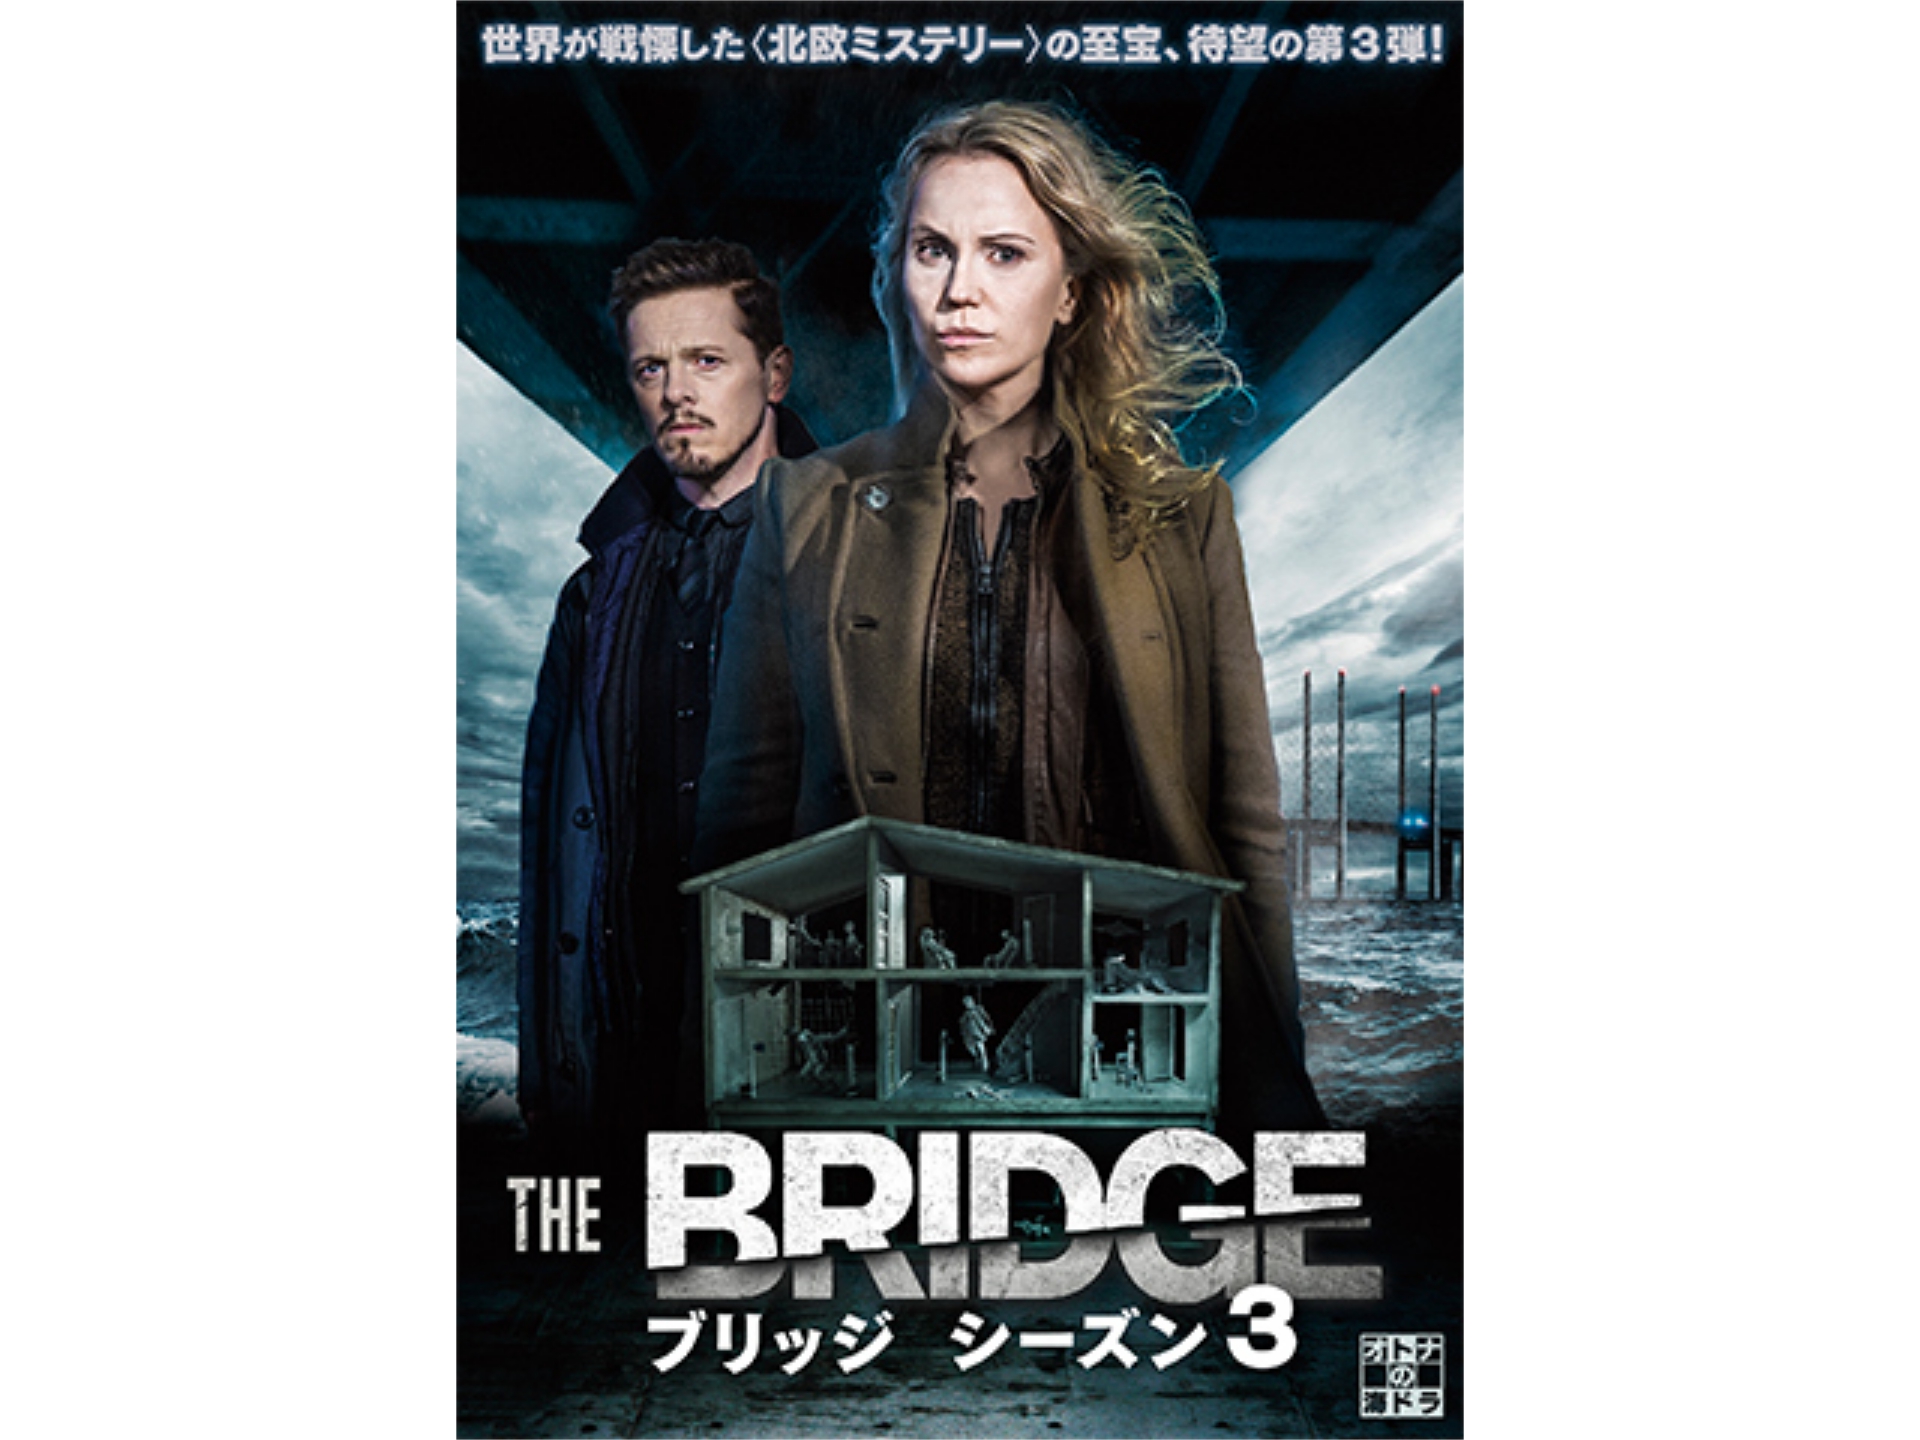 ドラマ The Bridge ブリッジ シーズン3 第4話 欠けた遺体 字幕版 フル動画 初月無料 動画配信サービスのビデオマーケット